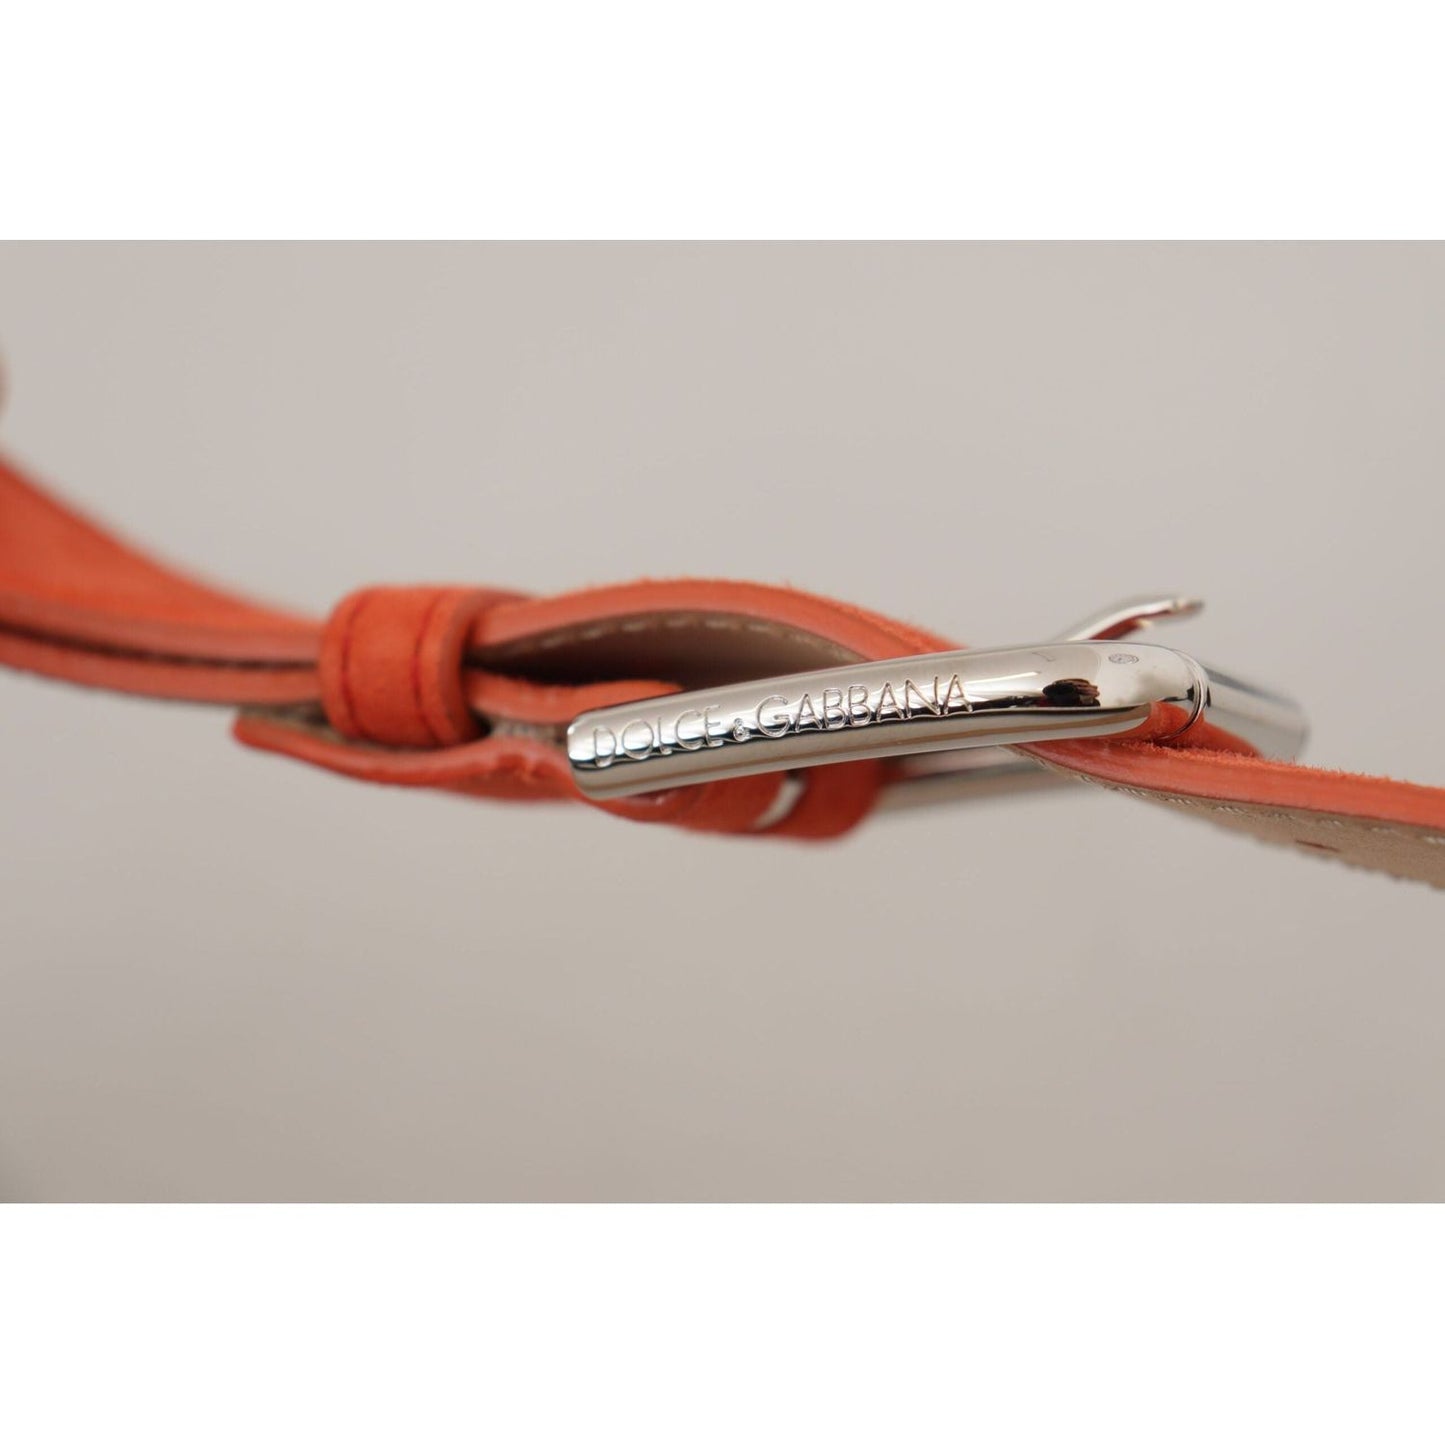 Dolce & Gabbana Elegant Suede Leather Belt in Vibrant Orange orange-leather-suede-silver-logo-metal-buckle-belt IMG_8852-scaled-3d5bf358-803.jpg